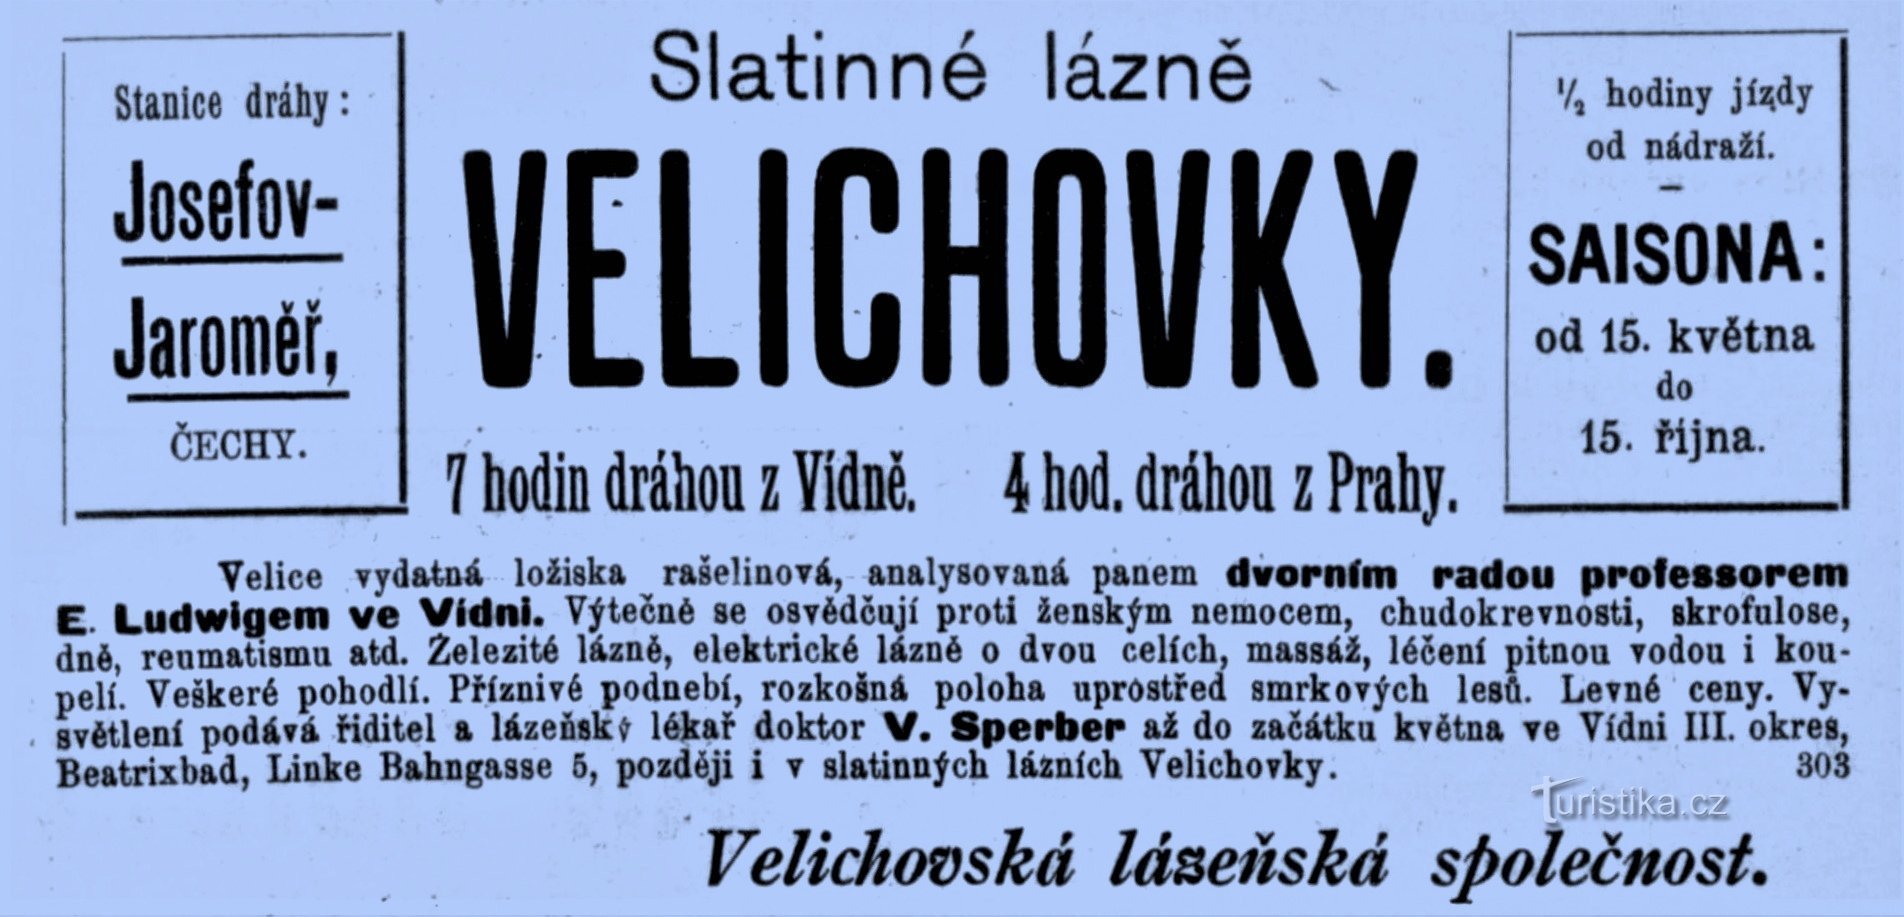 Reklam för spaet i Velichovky från 1898